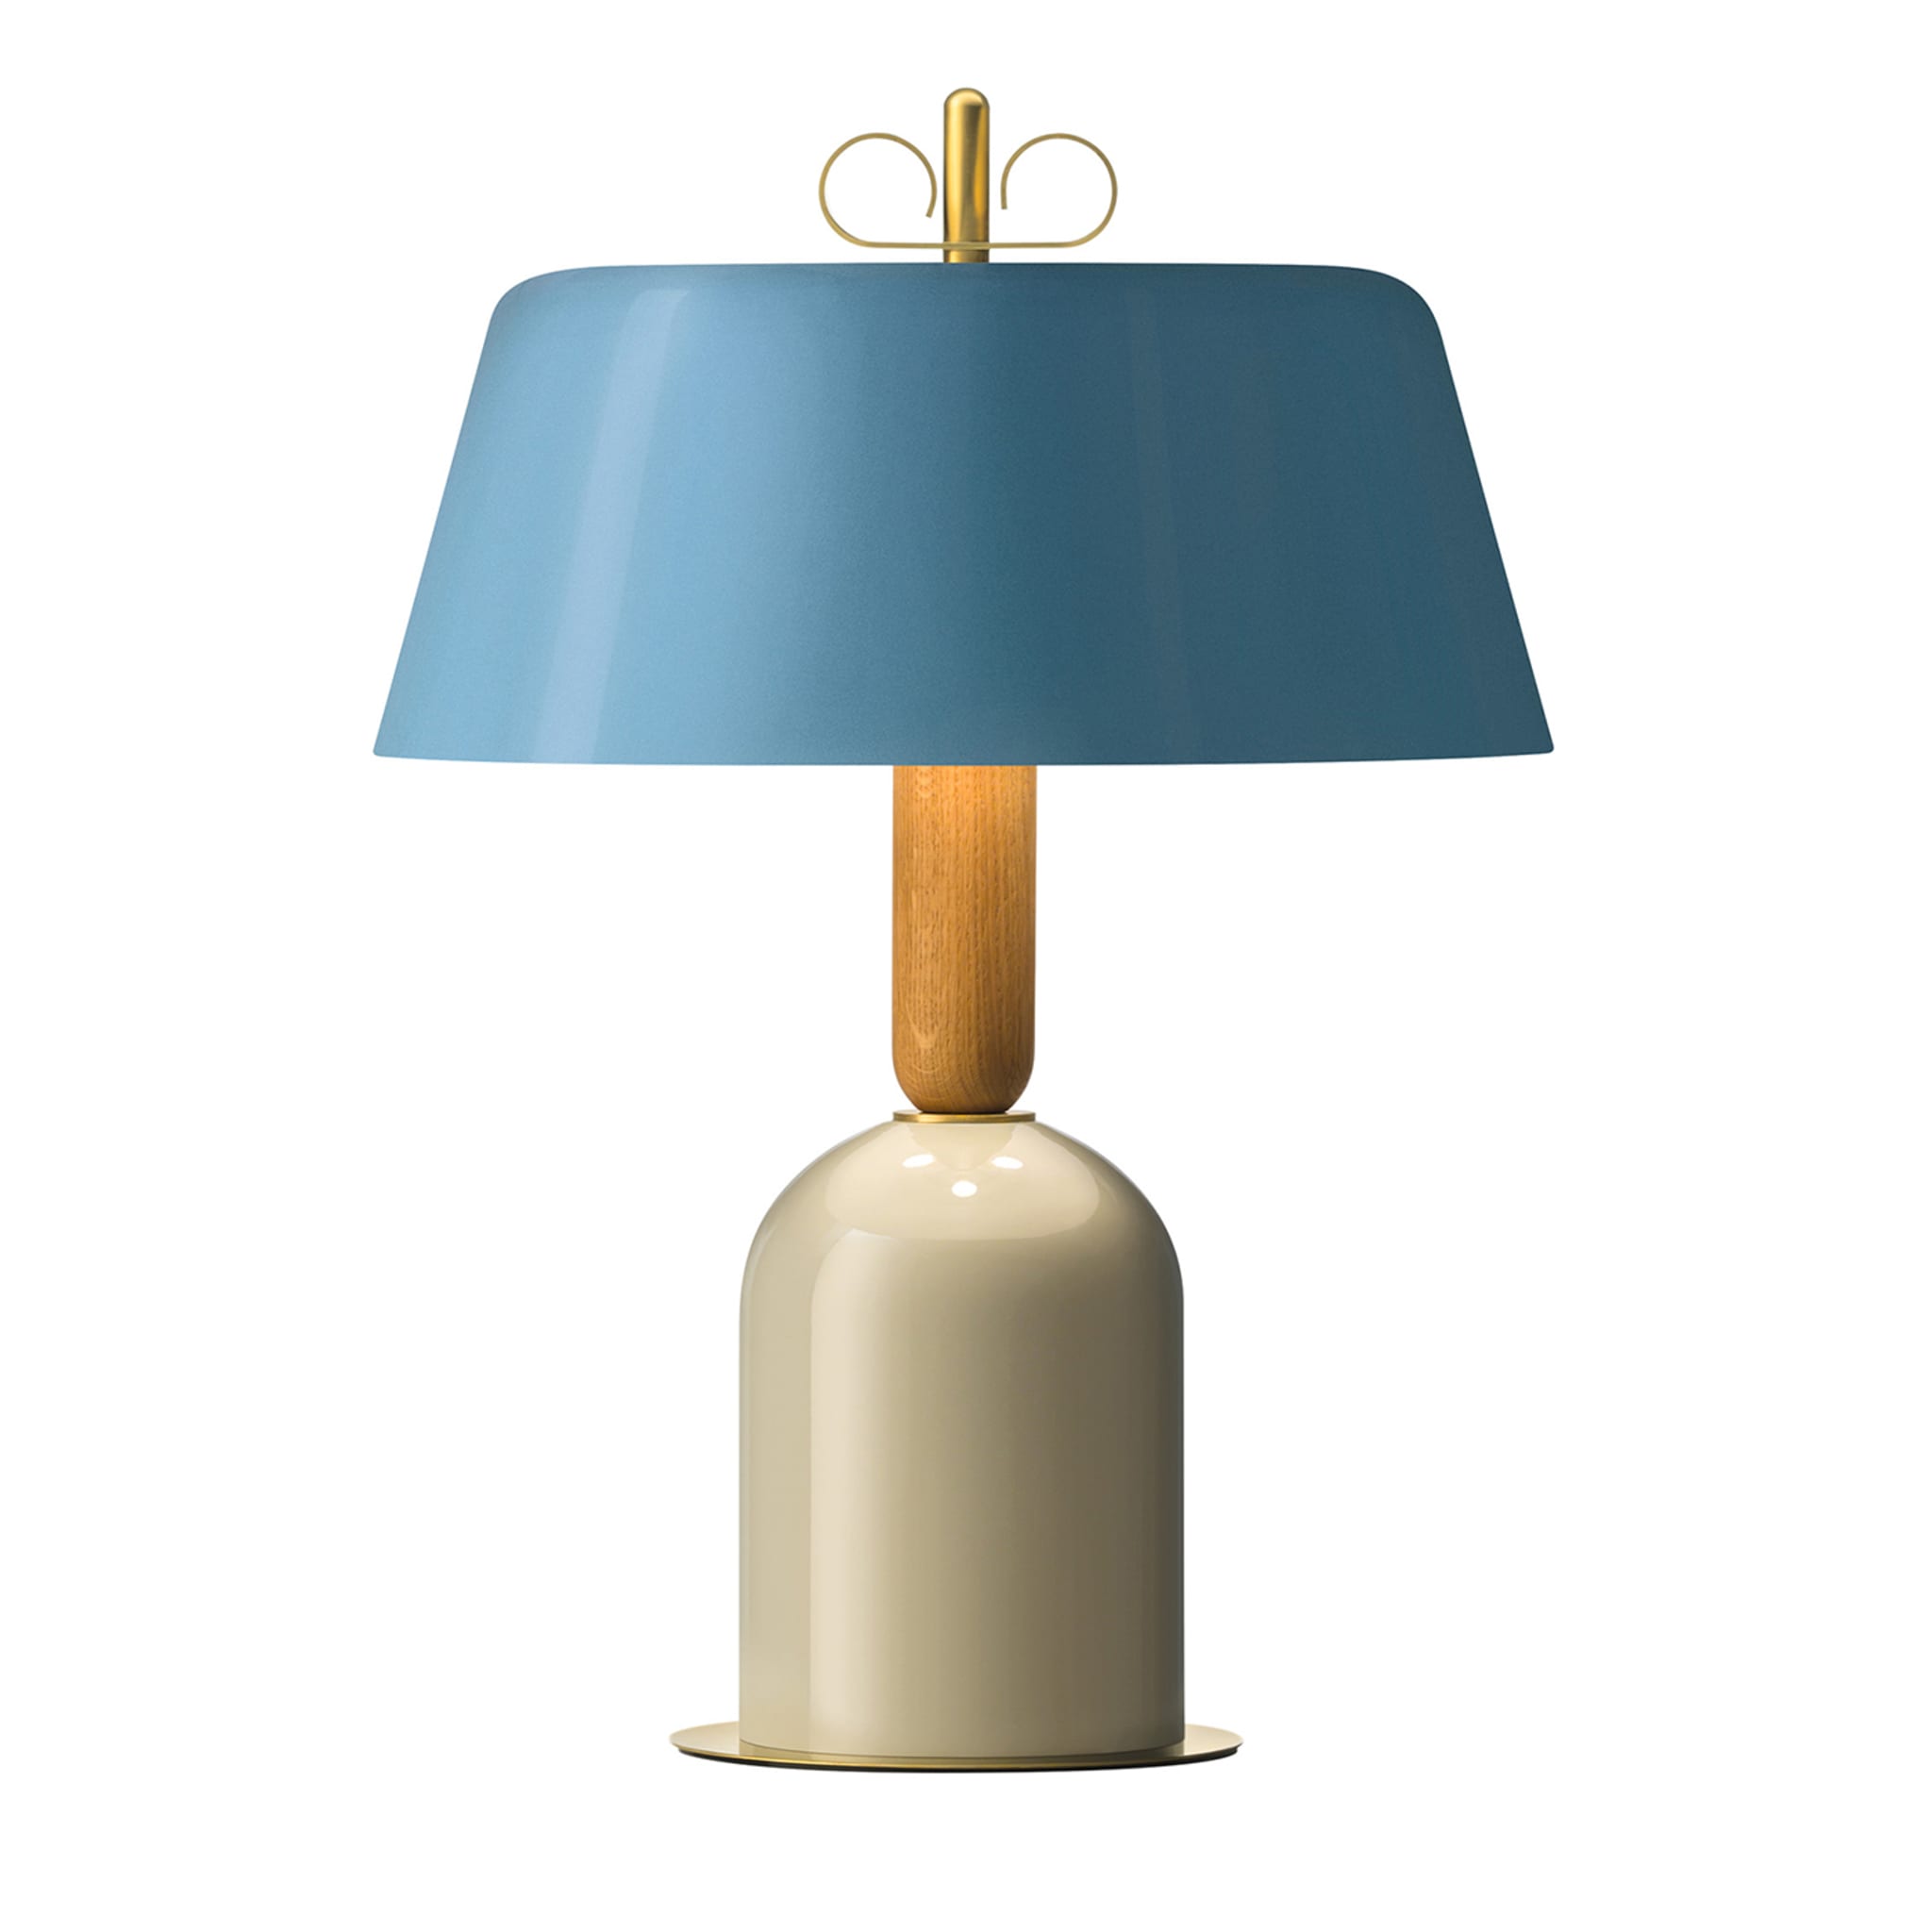 Bon Ton Light Blue Table Lamp by Cristina Celestino - Main view